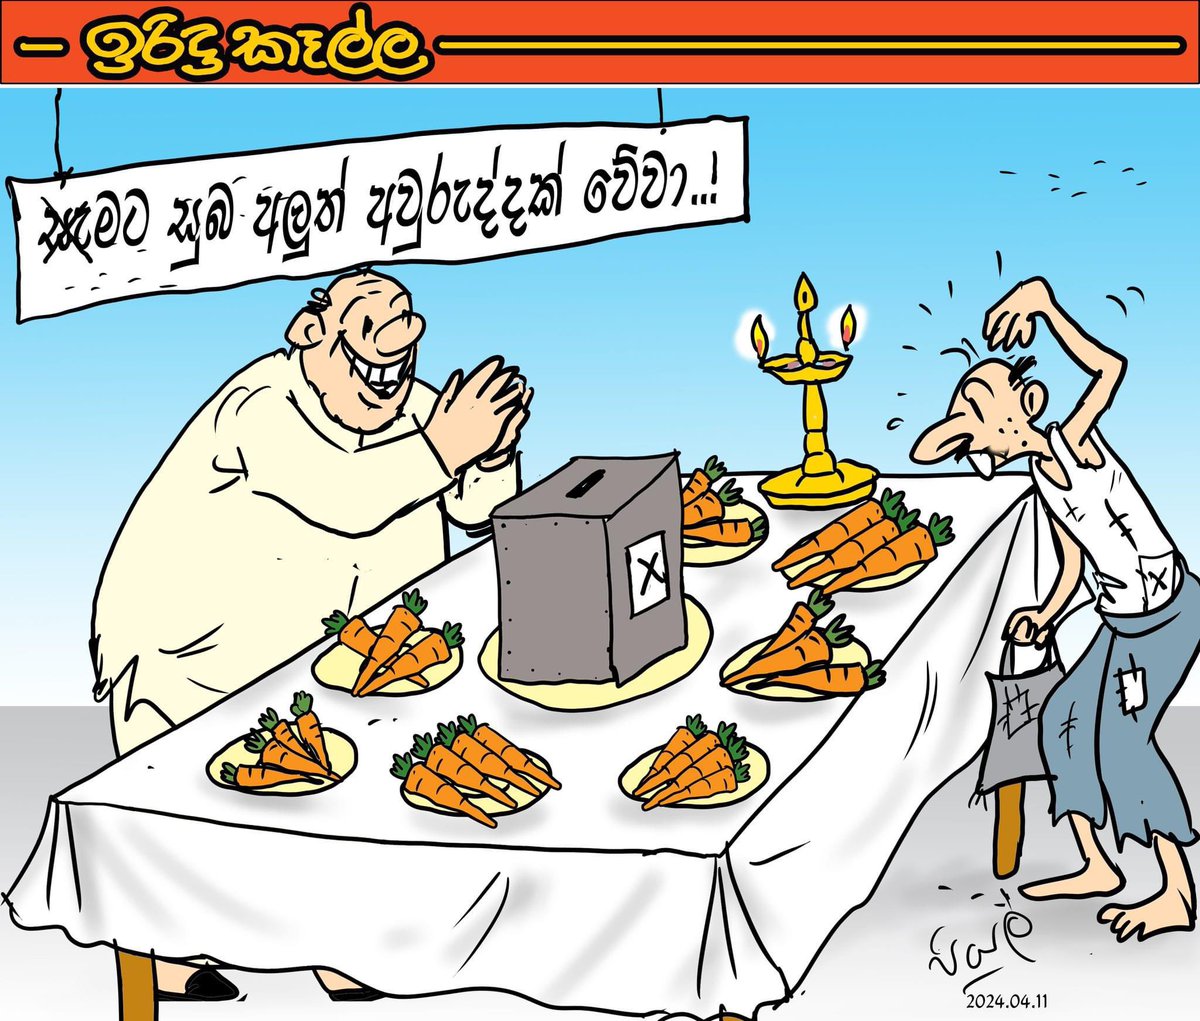 Lankadeepa cartoon by Piyal Udaya Samaraweera #lka #SriLanka #PresPollSL